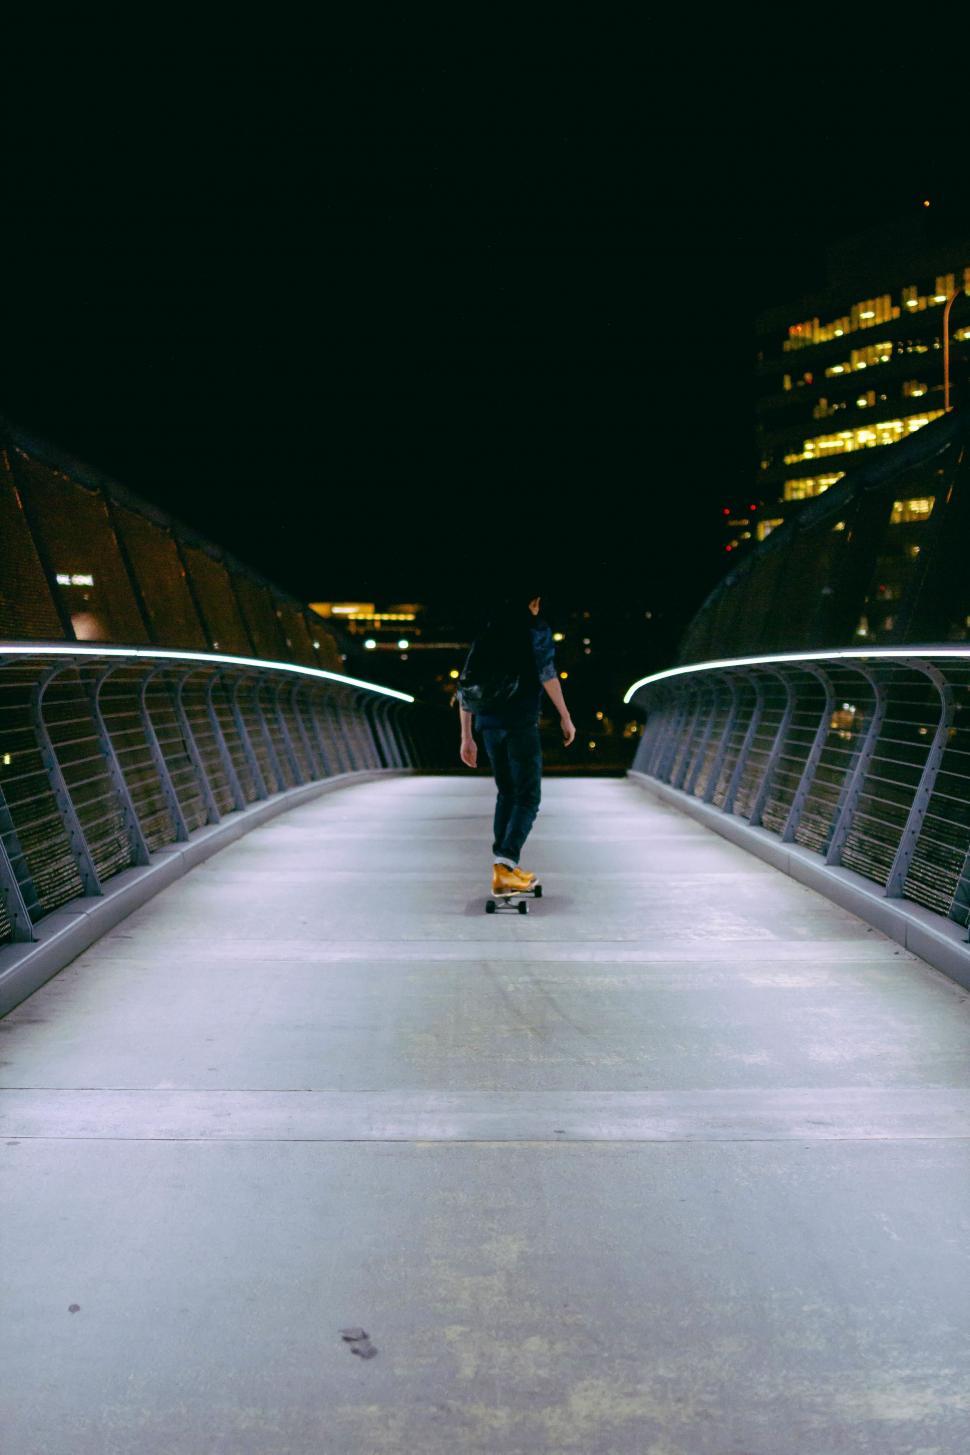 Free Image of Man Riding Skateboard Across Bridge at Night 